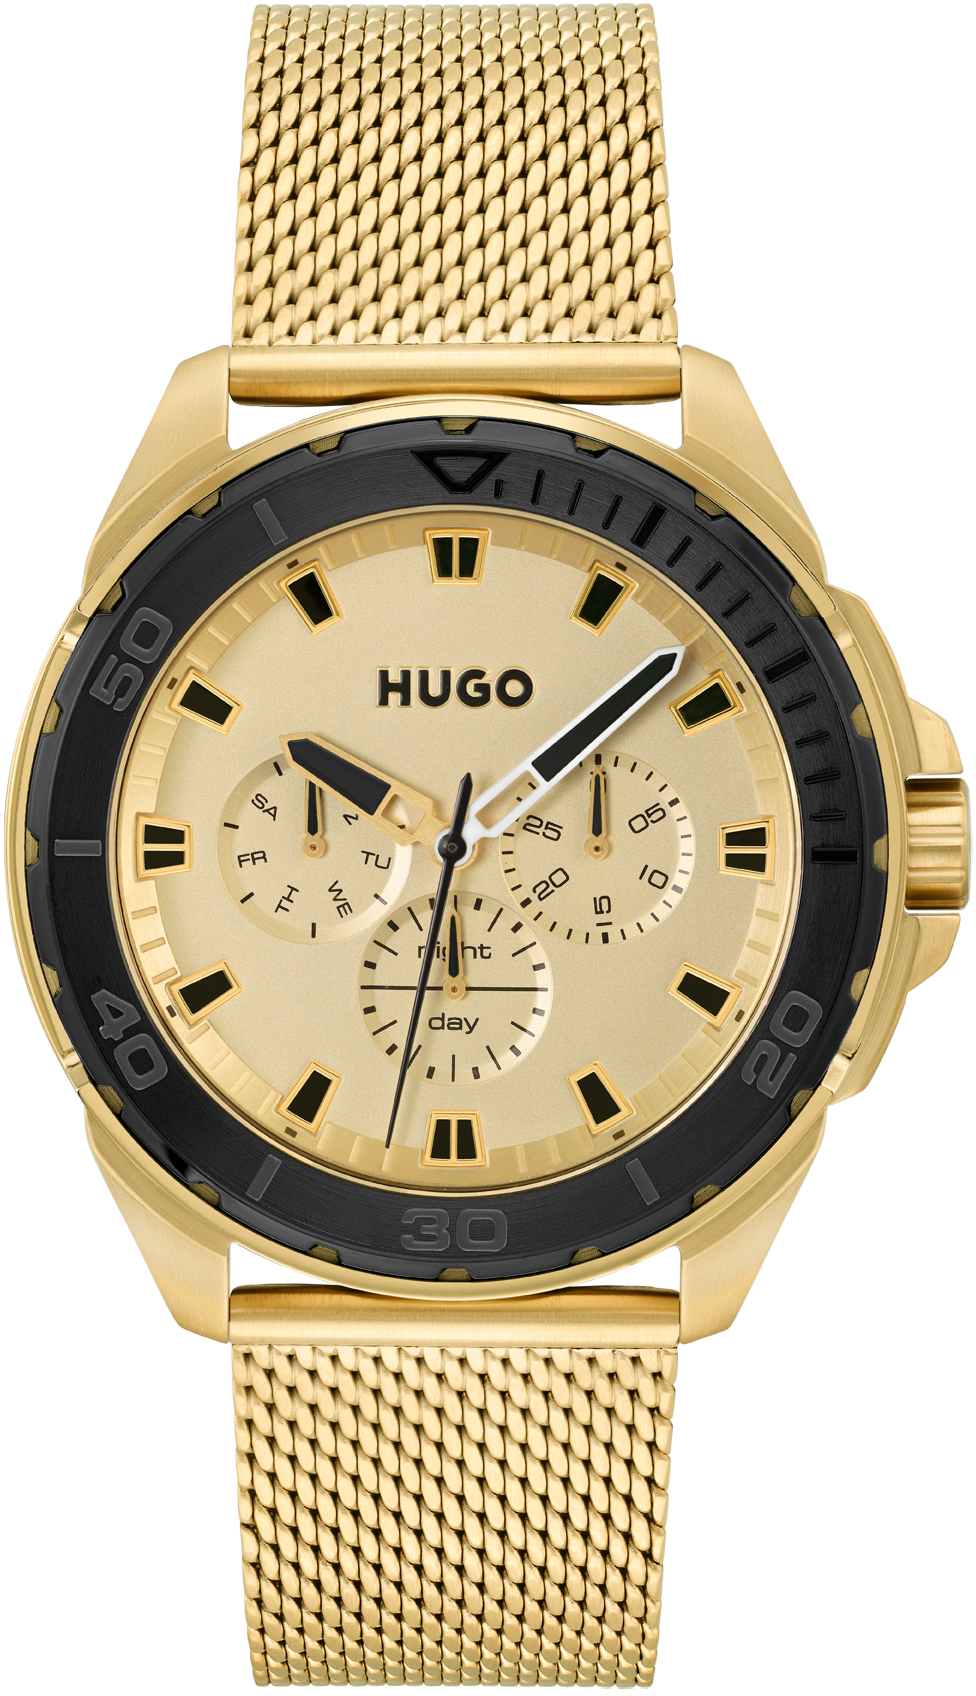 Hugo Boss Fresh 1530288